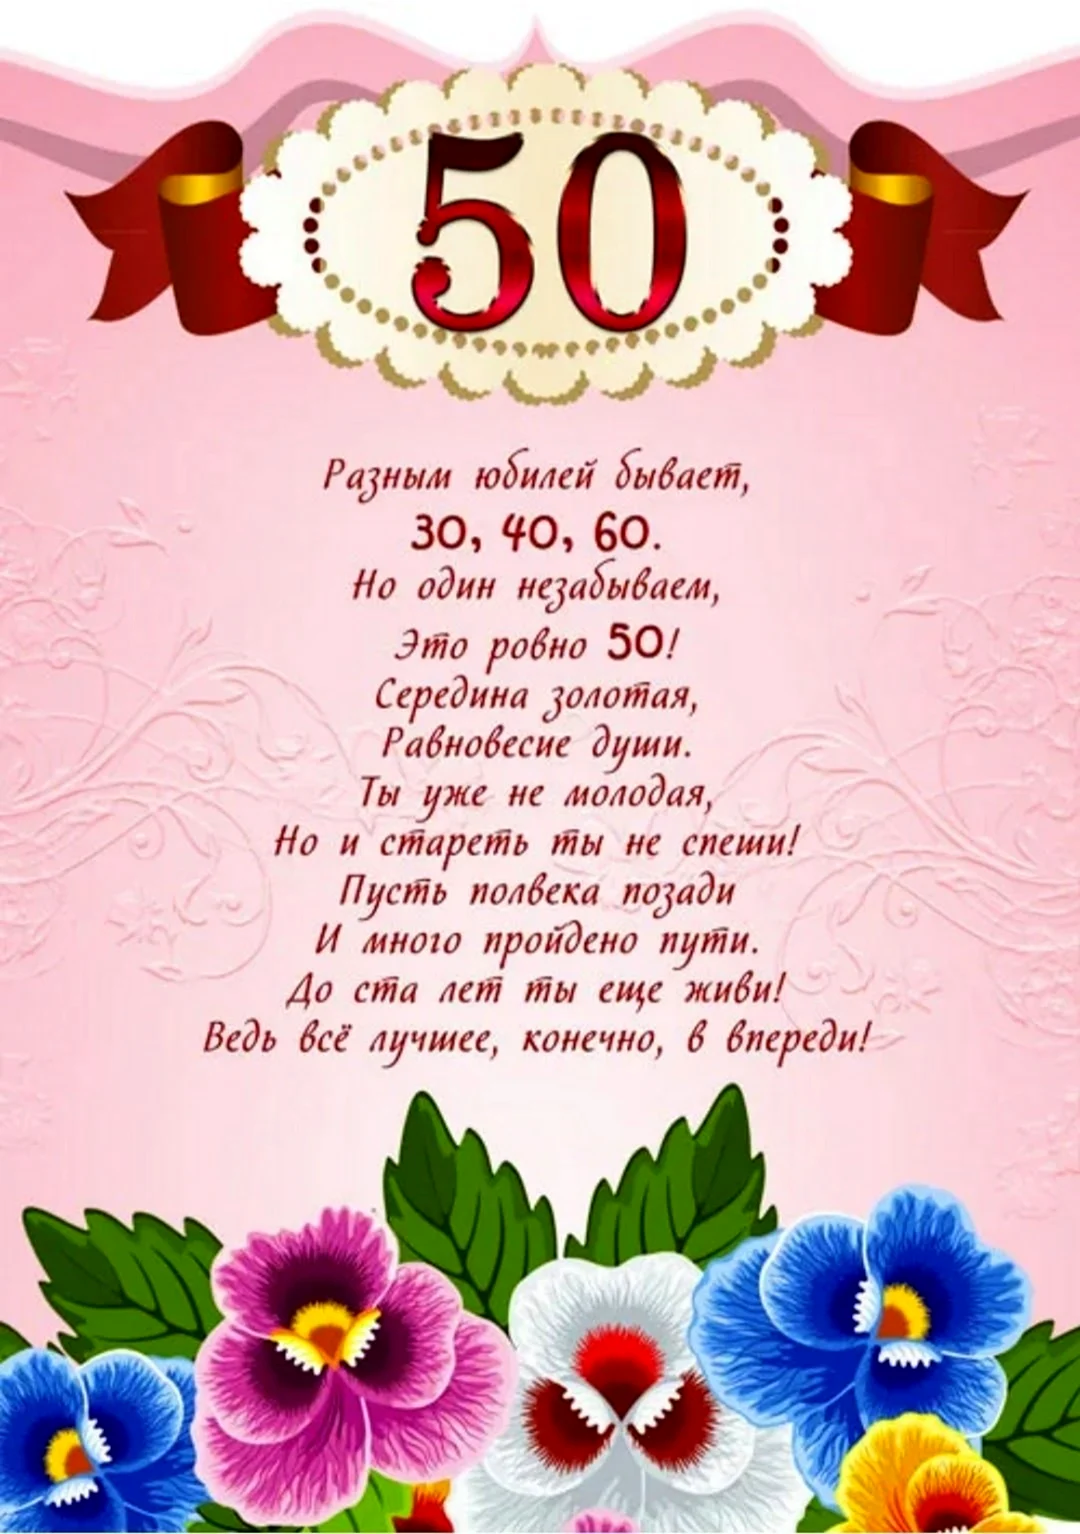 Поздравление с юбилеем 50 лет